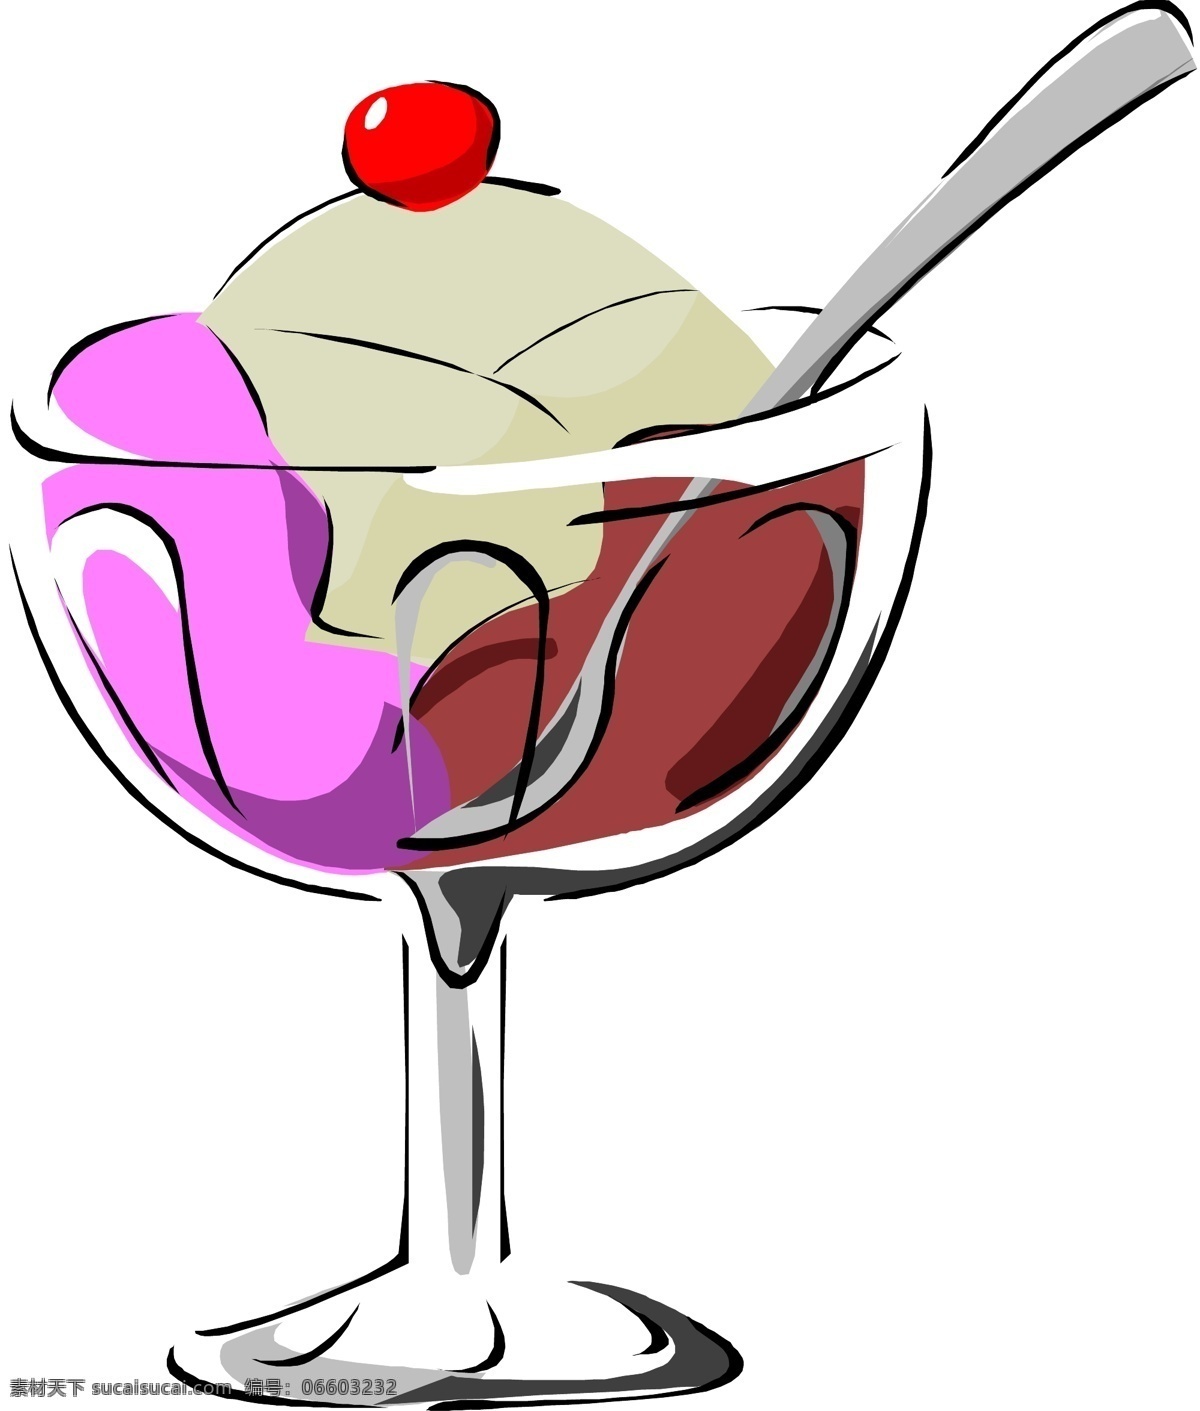 卡通 冰淇淋 漫画 矢量下载 网页矢量 商业矢量 矢量用具 白色